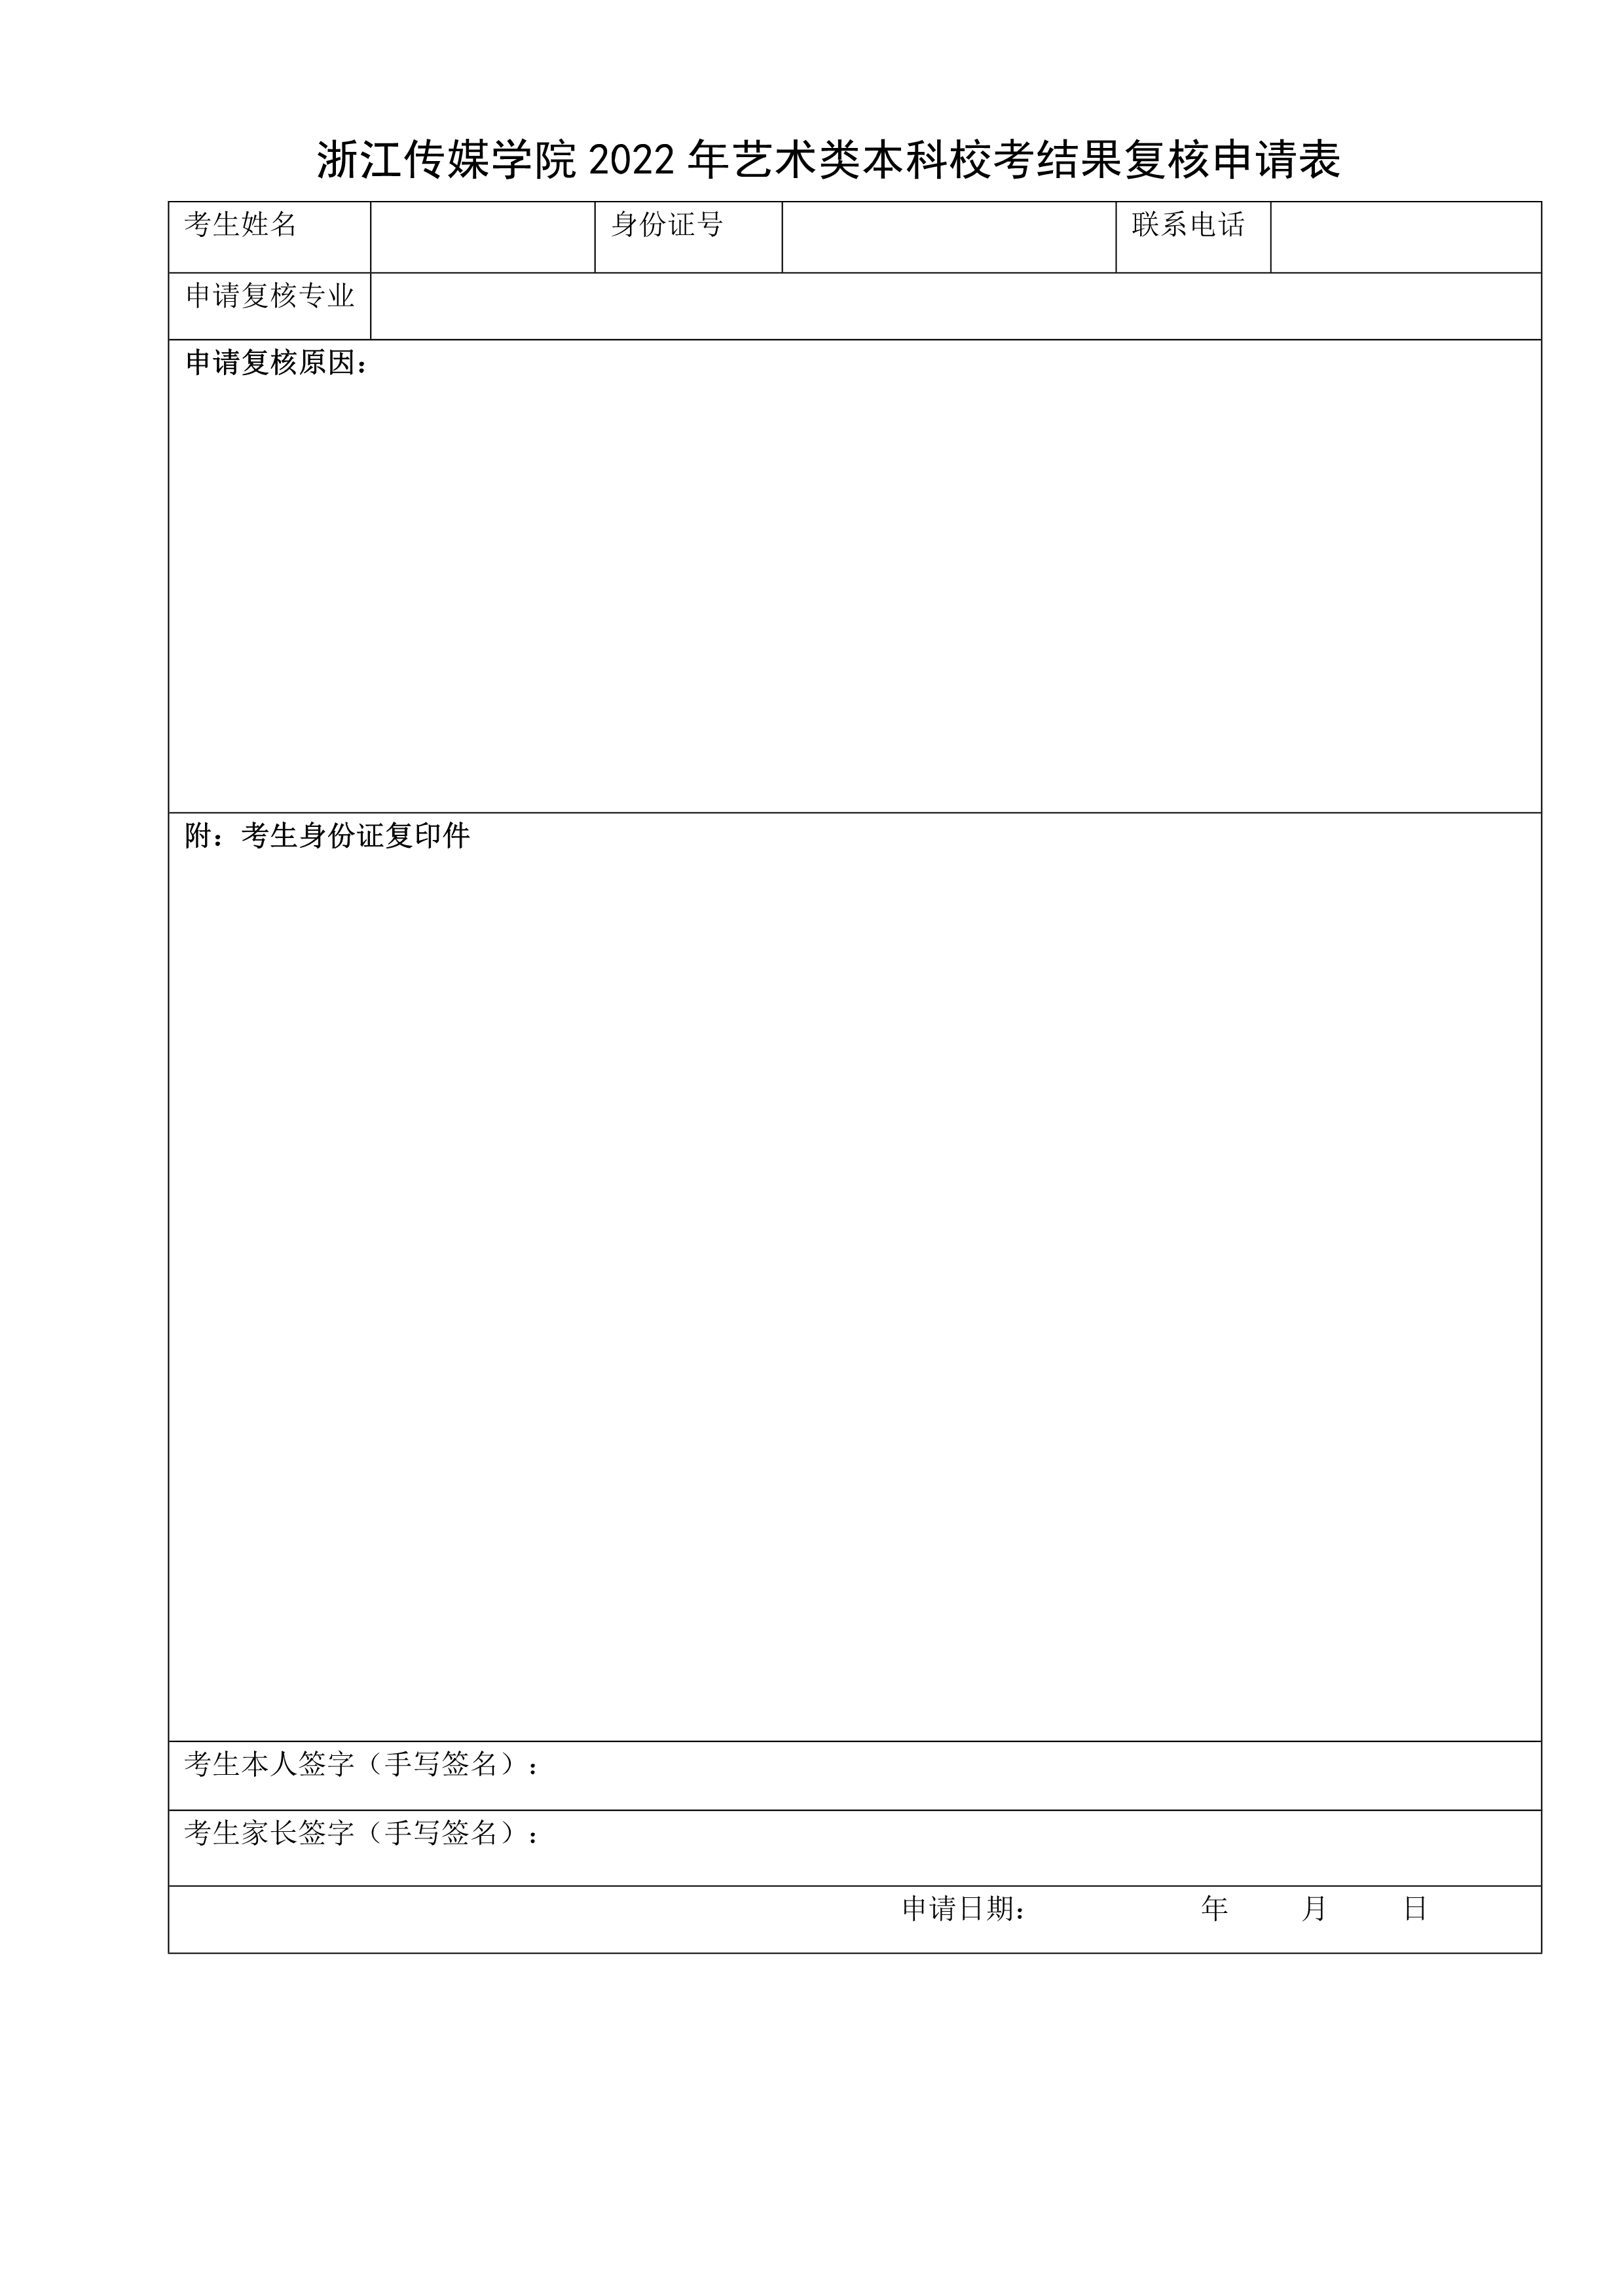 附件1：浙江传媒学院2022年艺术类本科校考结果复核申请表_1.jpg